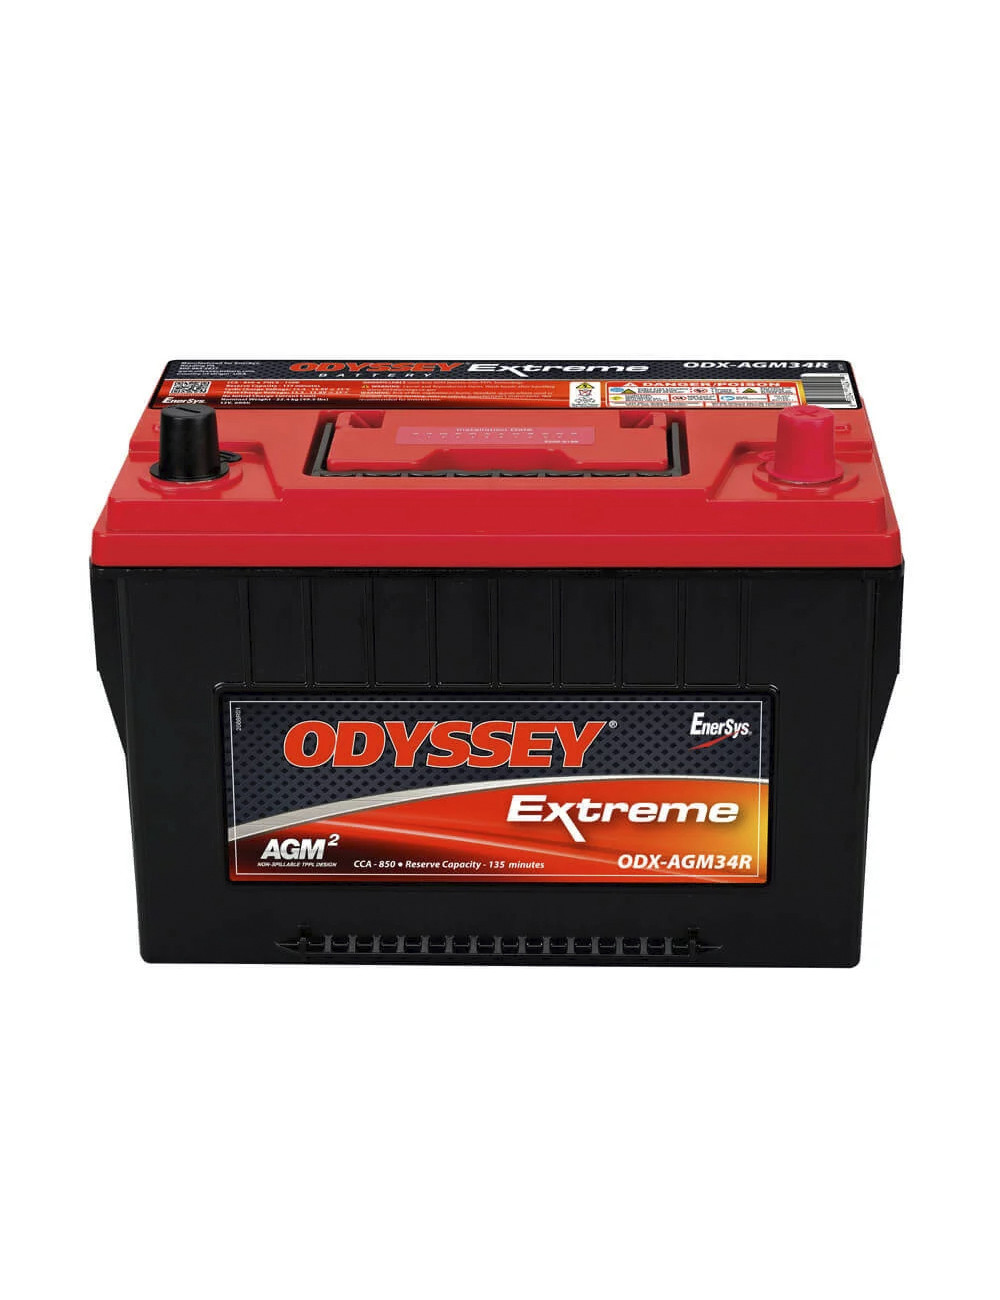 34R-PC1500 bateria 12V 68Ah C20 850CCA Odyssey Extreme ODX-AGM34R - 2